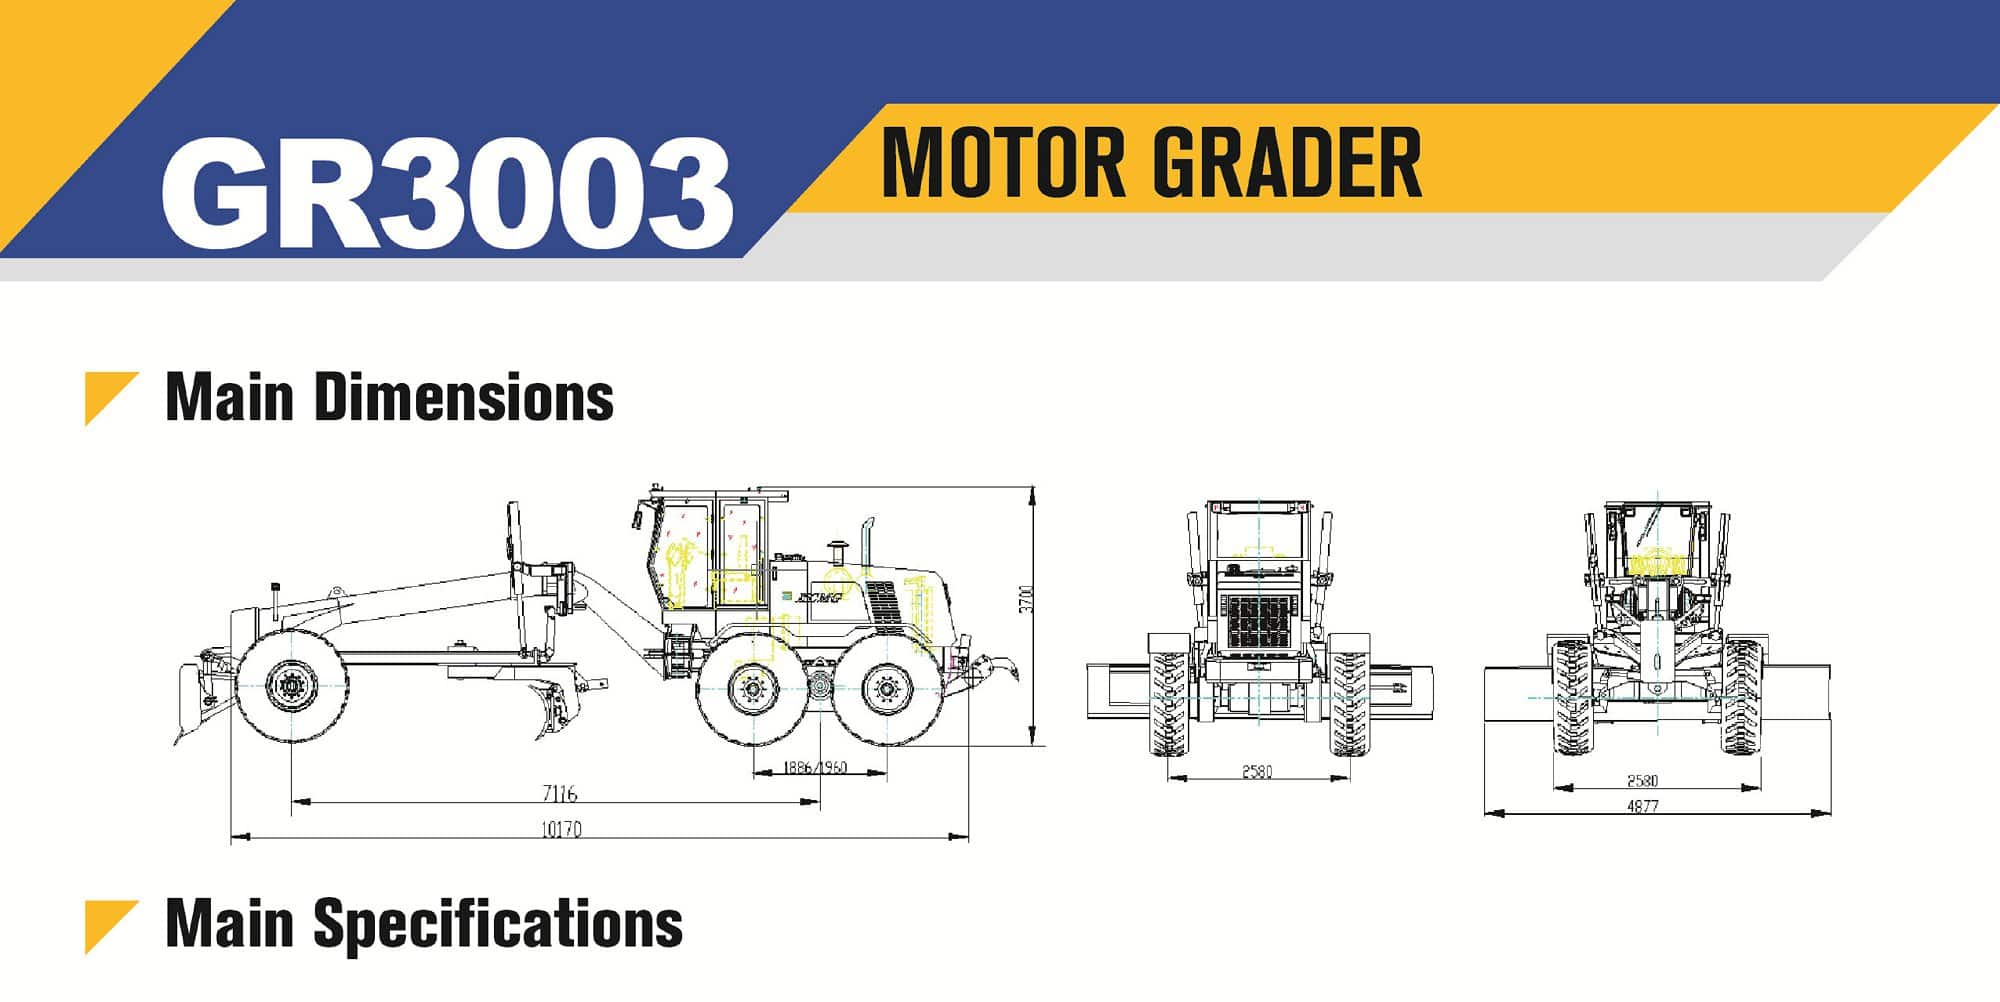 XCMG official manufacturer GR3003 motor grader for sale